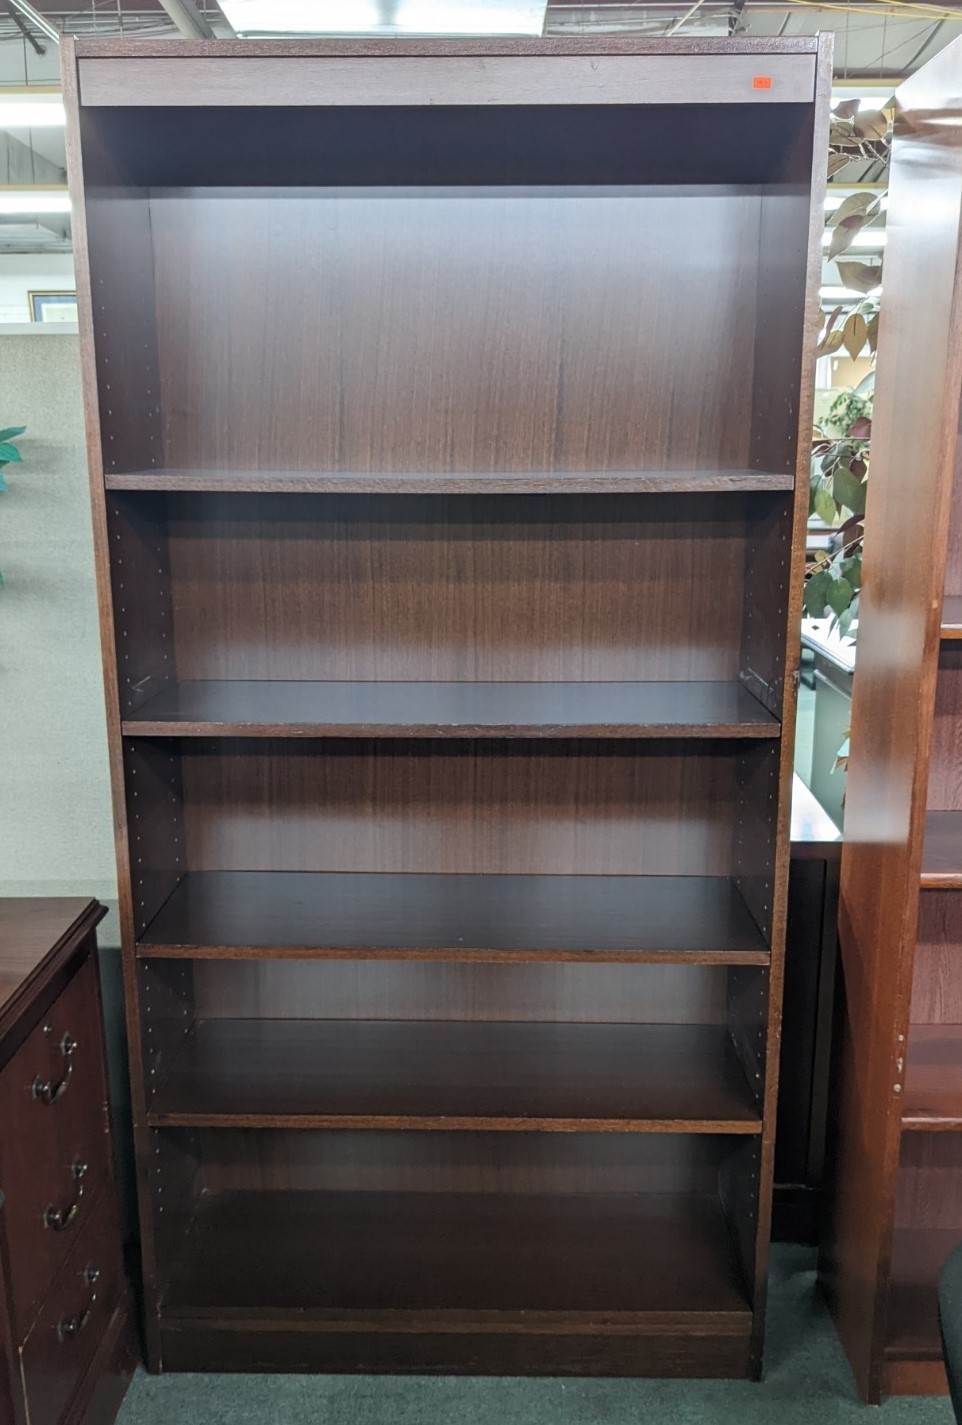 Used 5-Shelf Bookcase